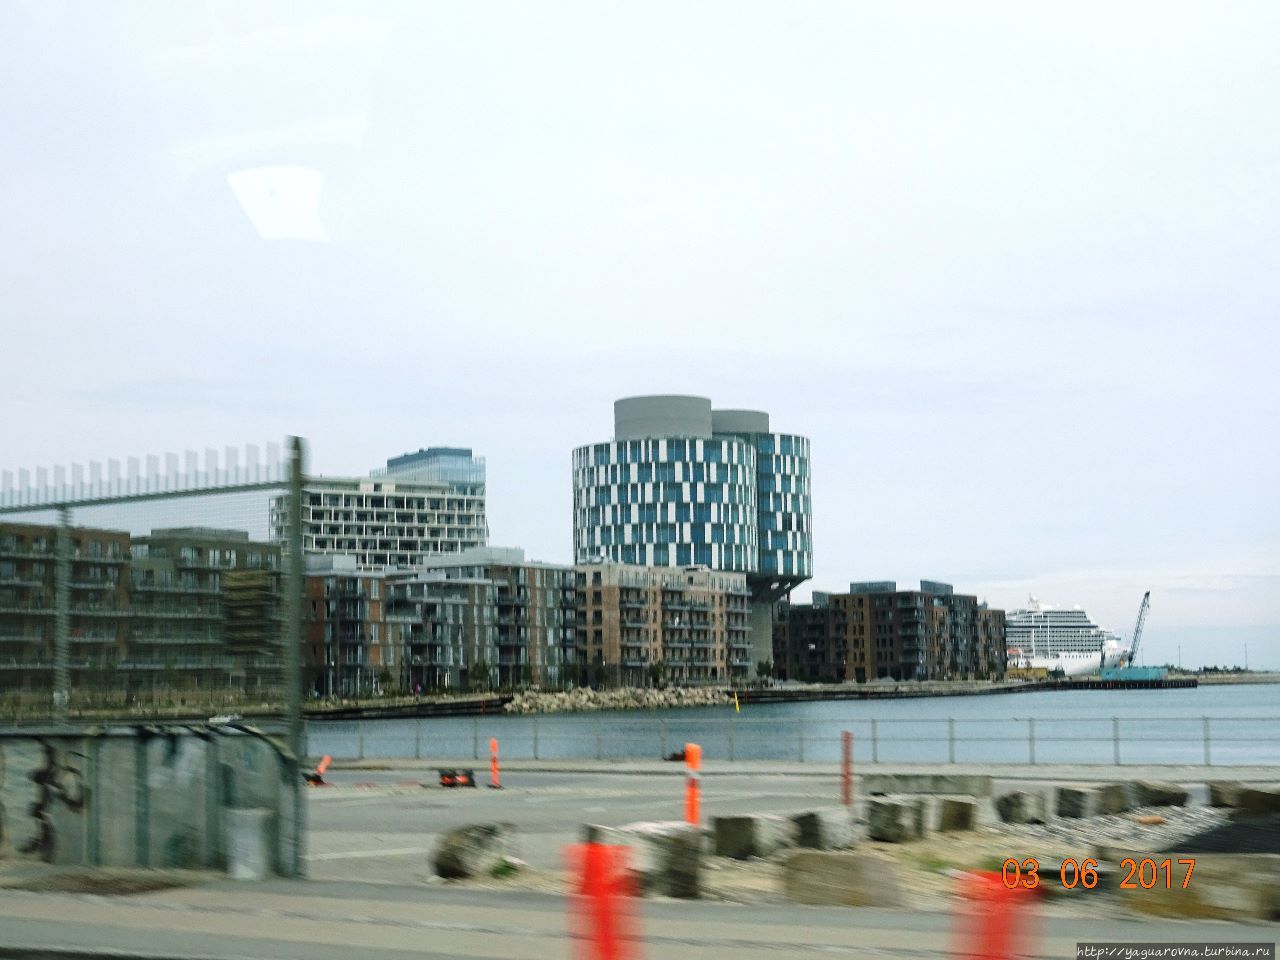 Копенгаген — знакомый город новыми тропами По дороге в порт. Копенгаген, Дания